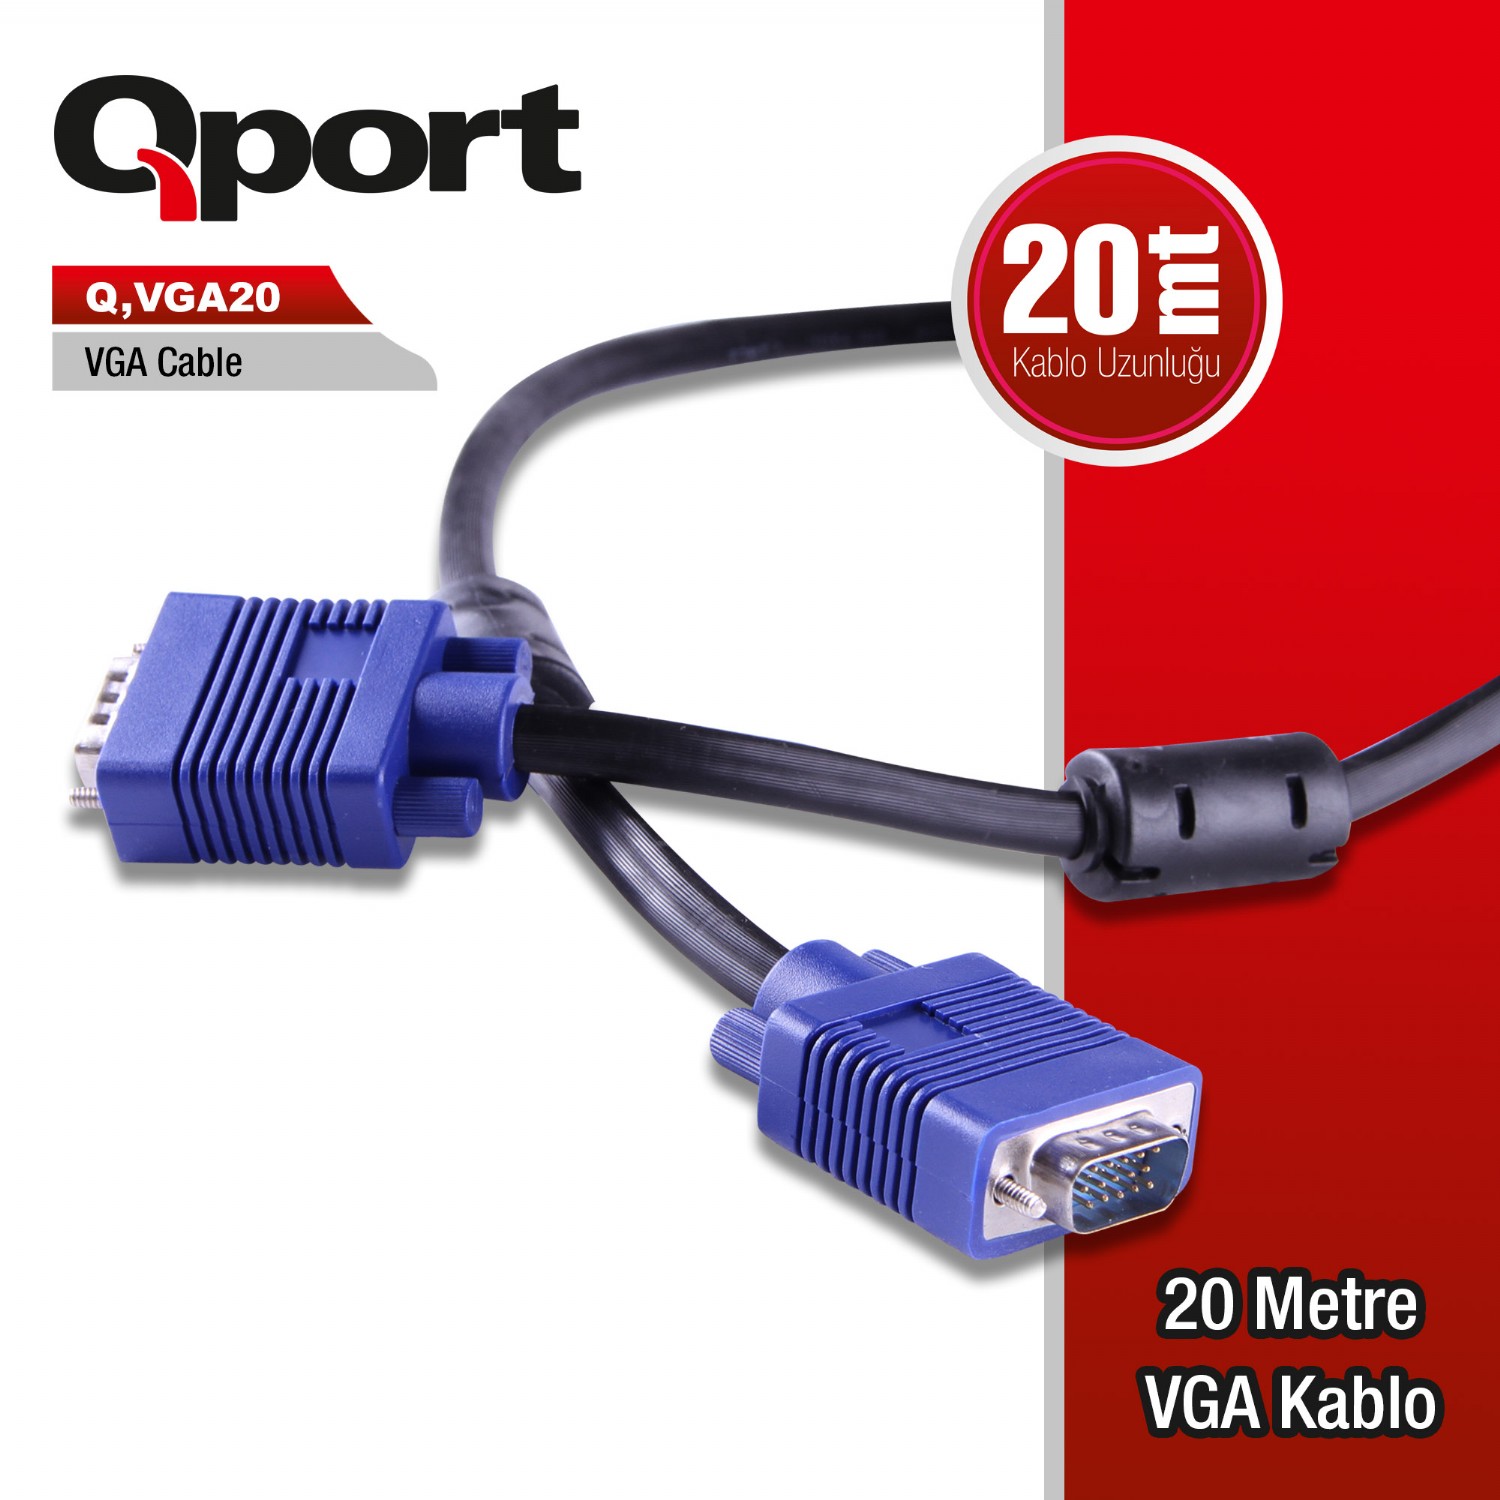 Q-VGA20